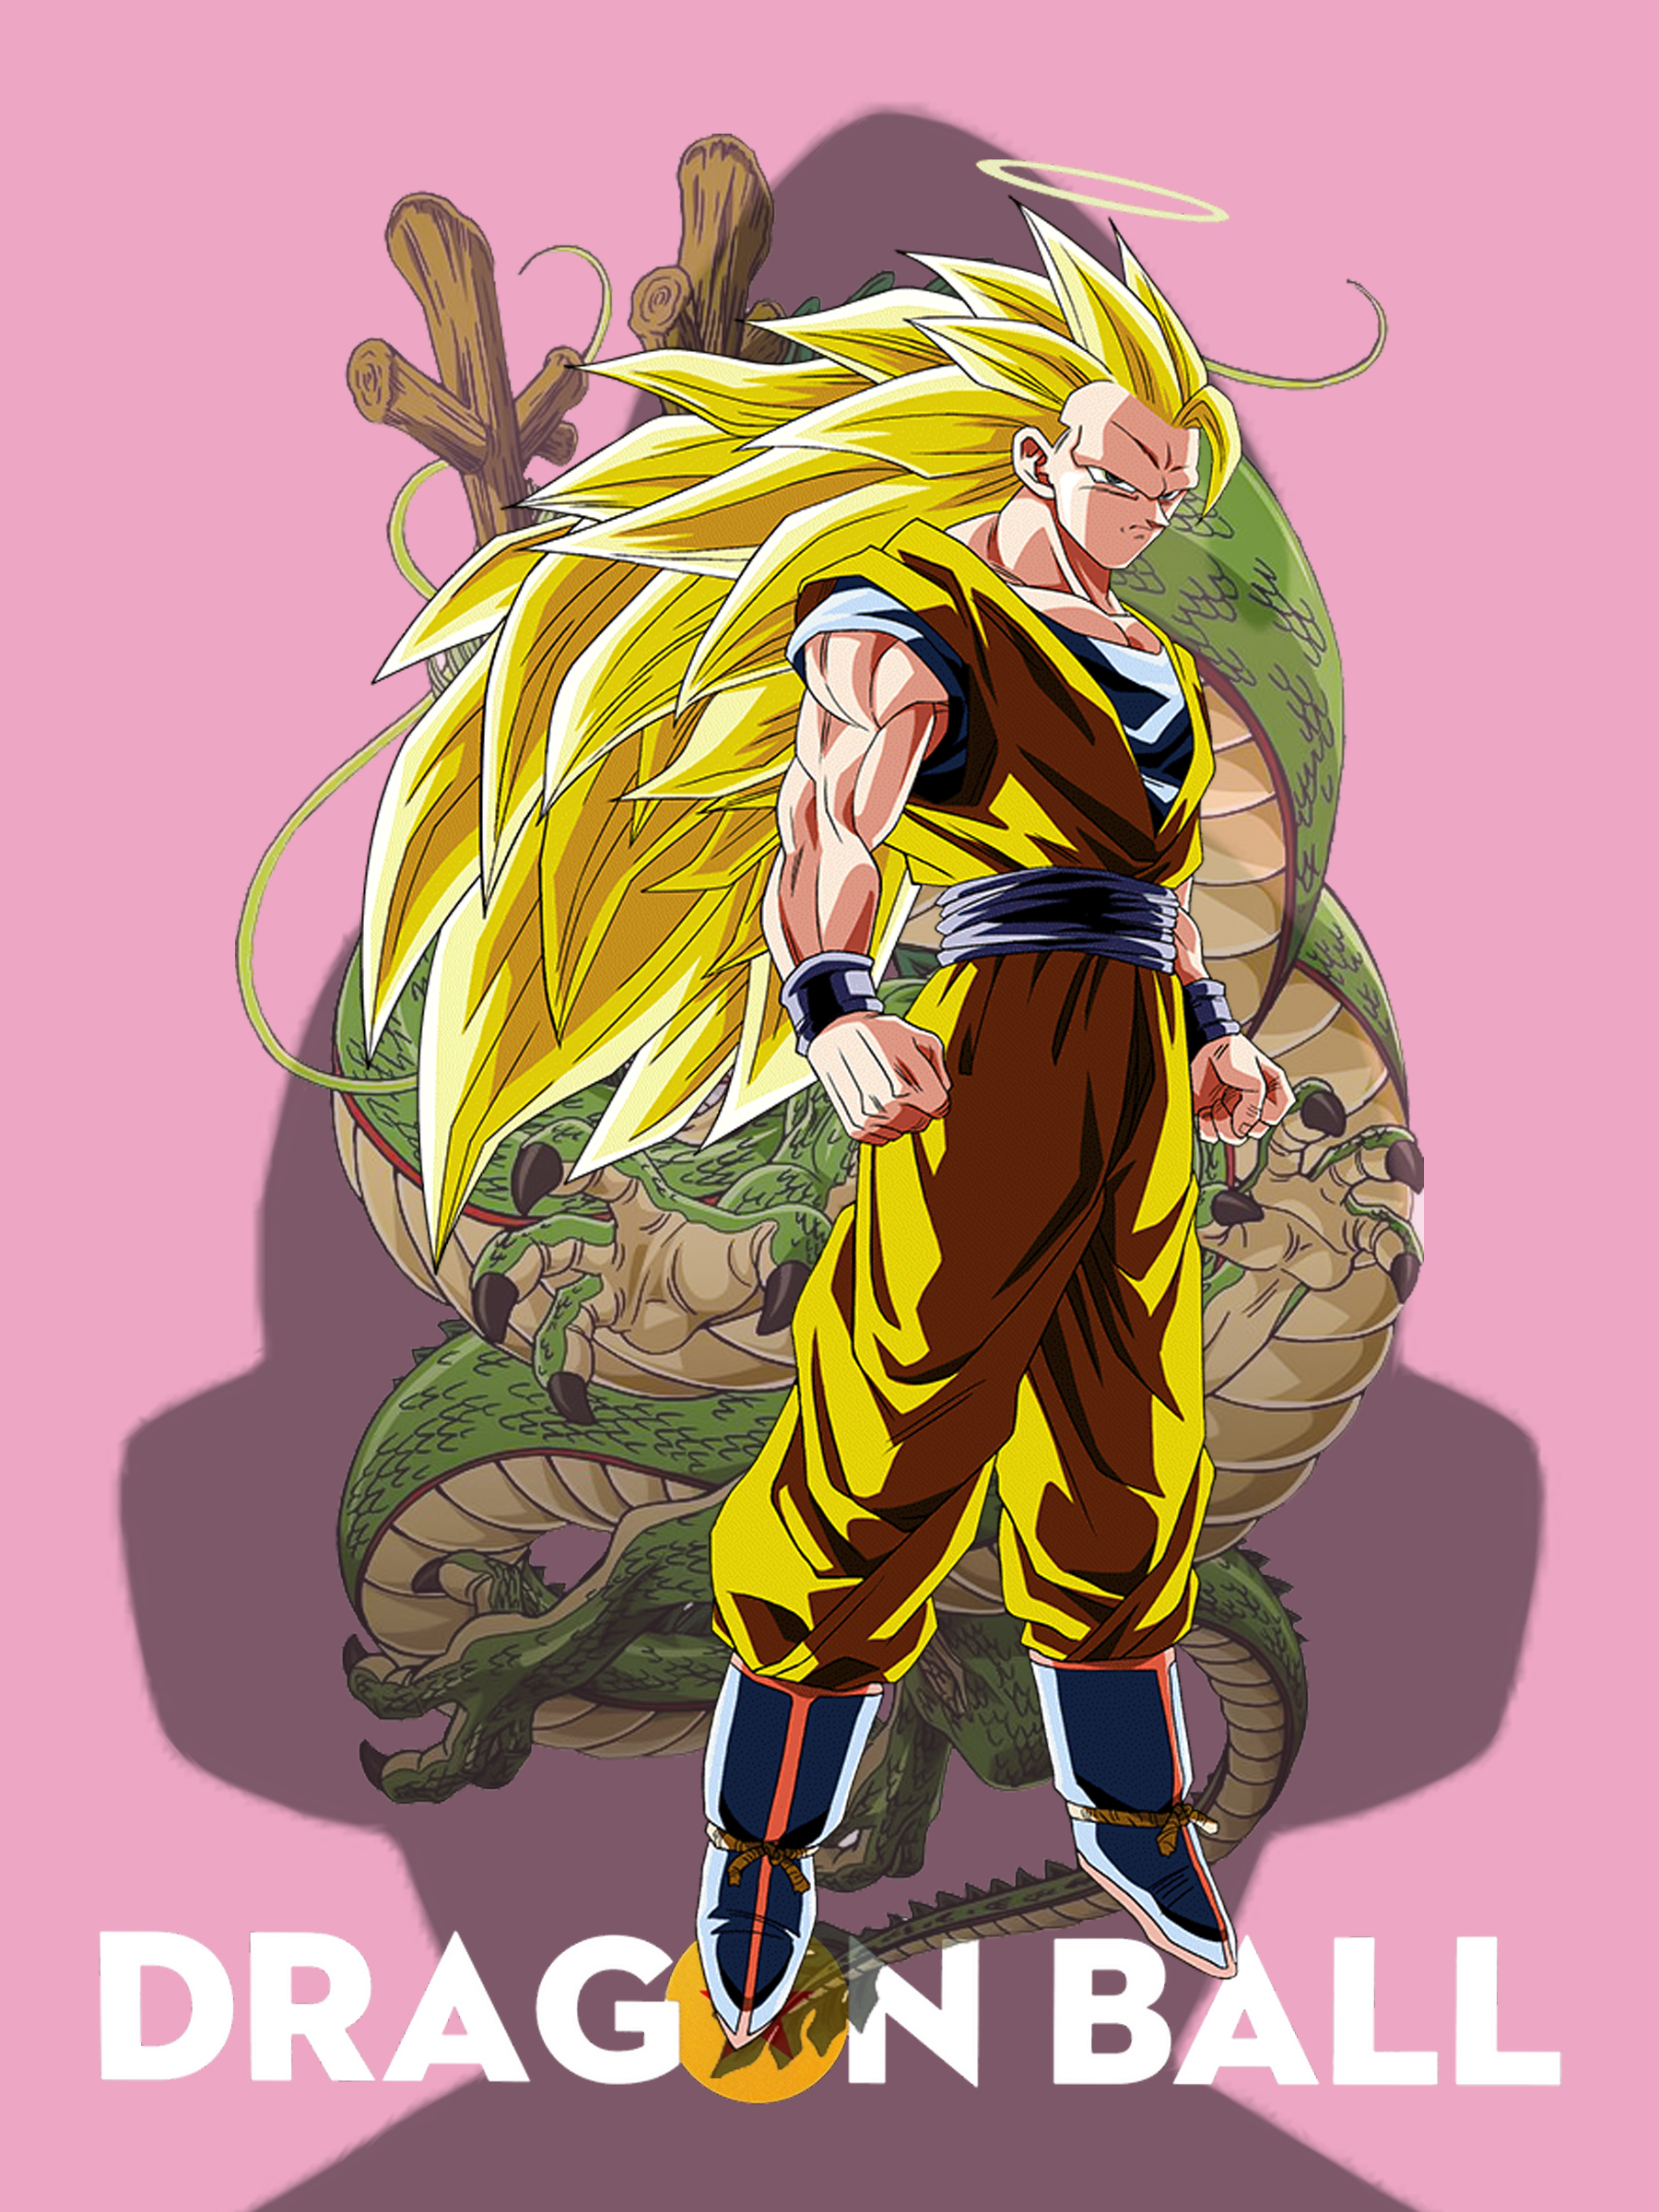 Dragon Ball Dragon Ball FighterZ Dragon Ball GT Dragon Ball Z Vertical Anime Men Son Goku Nimbus Blo 1800x2400